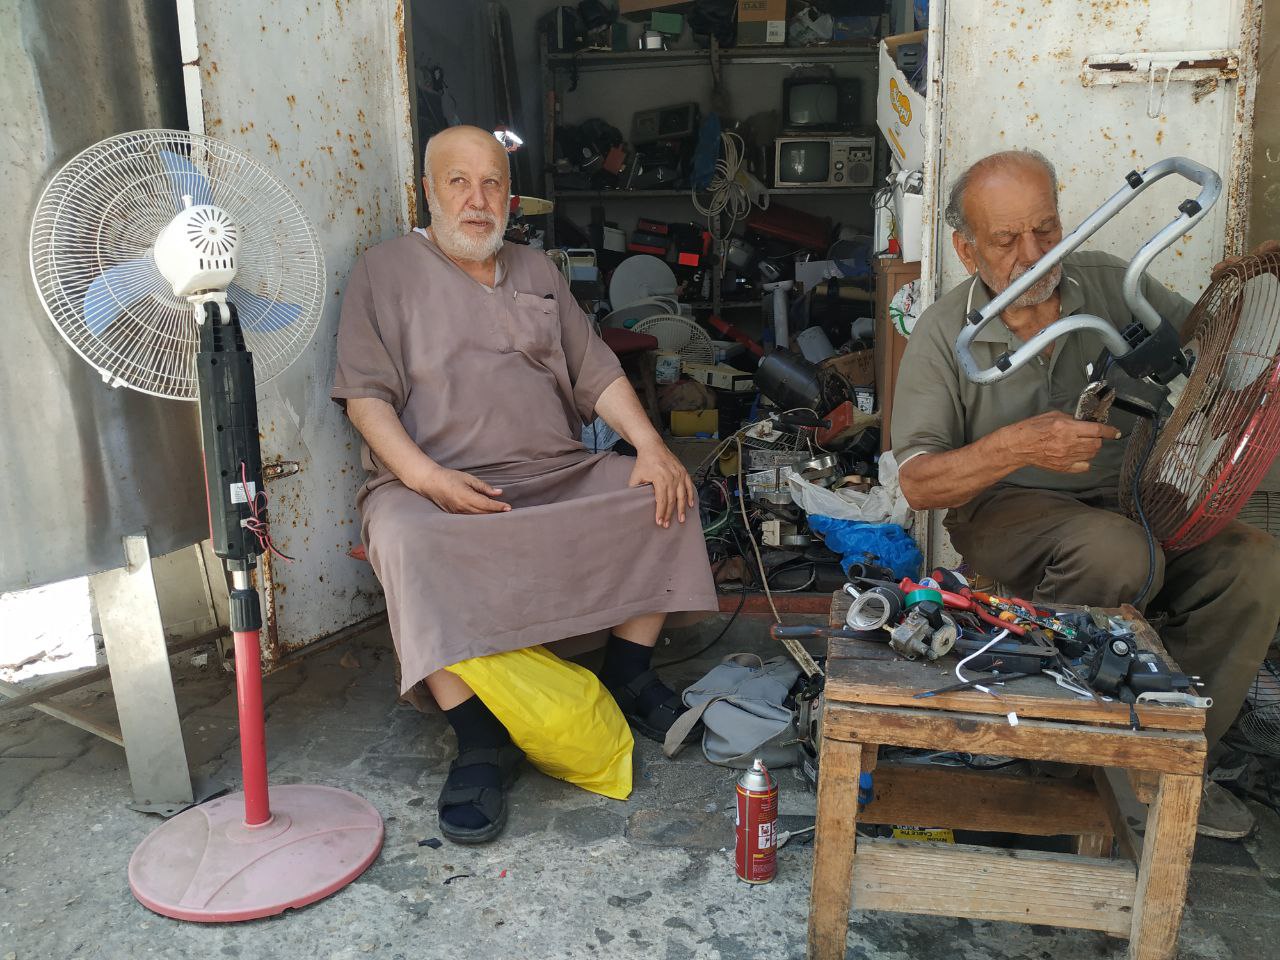 بعض الزبائن يطلبون تحويل أجهزتهم لتعمل بالبطاريات في ظل انقطاع الكهرباء بغزة (عبد الكريم سموني/ الترا فلسطين) 